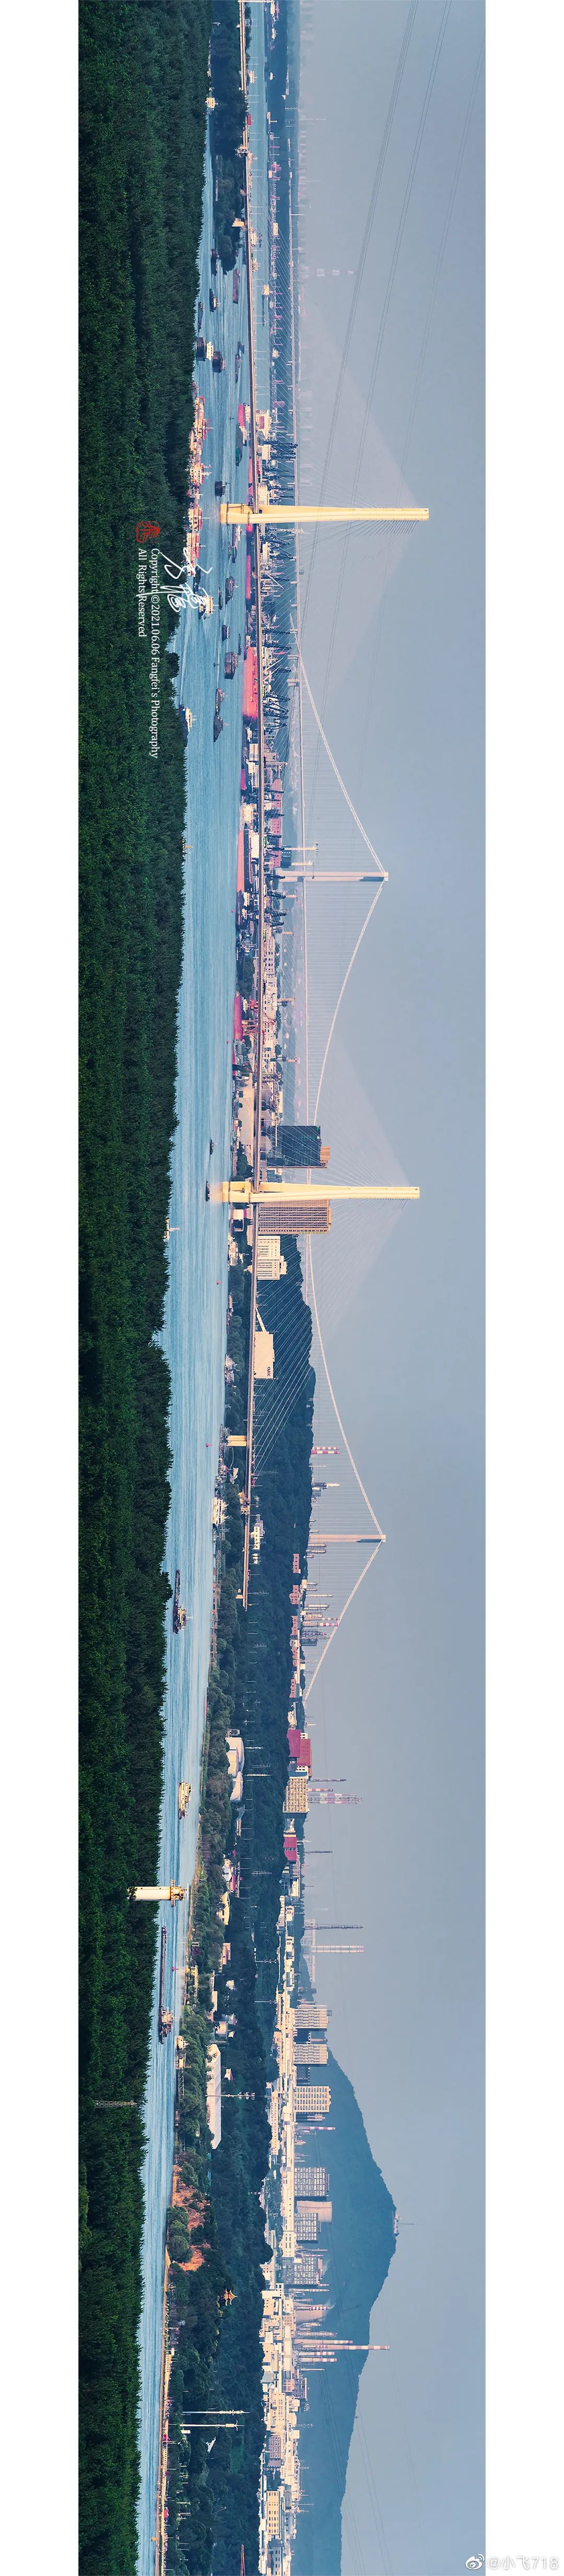 栖霞山长江大桥和八卦洲长江大桥(二桥)同框,携手构成南京北部的两条